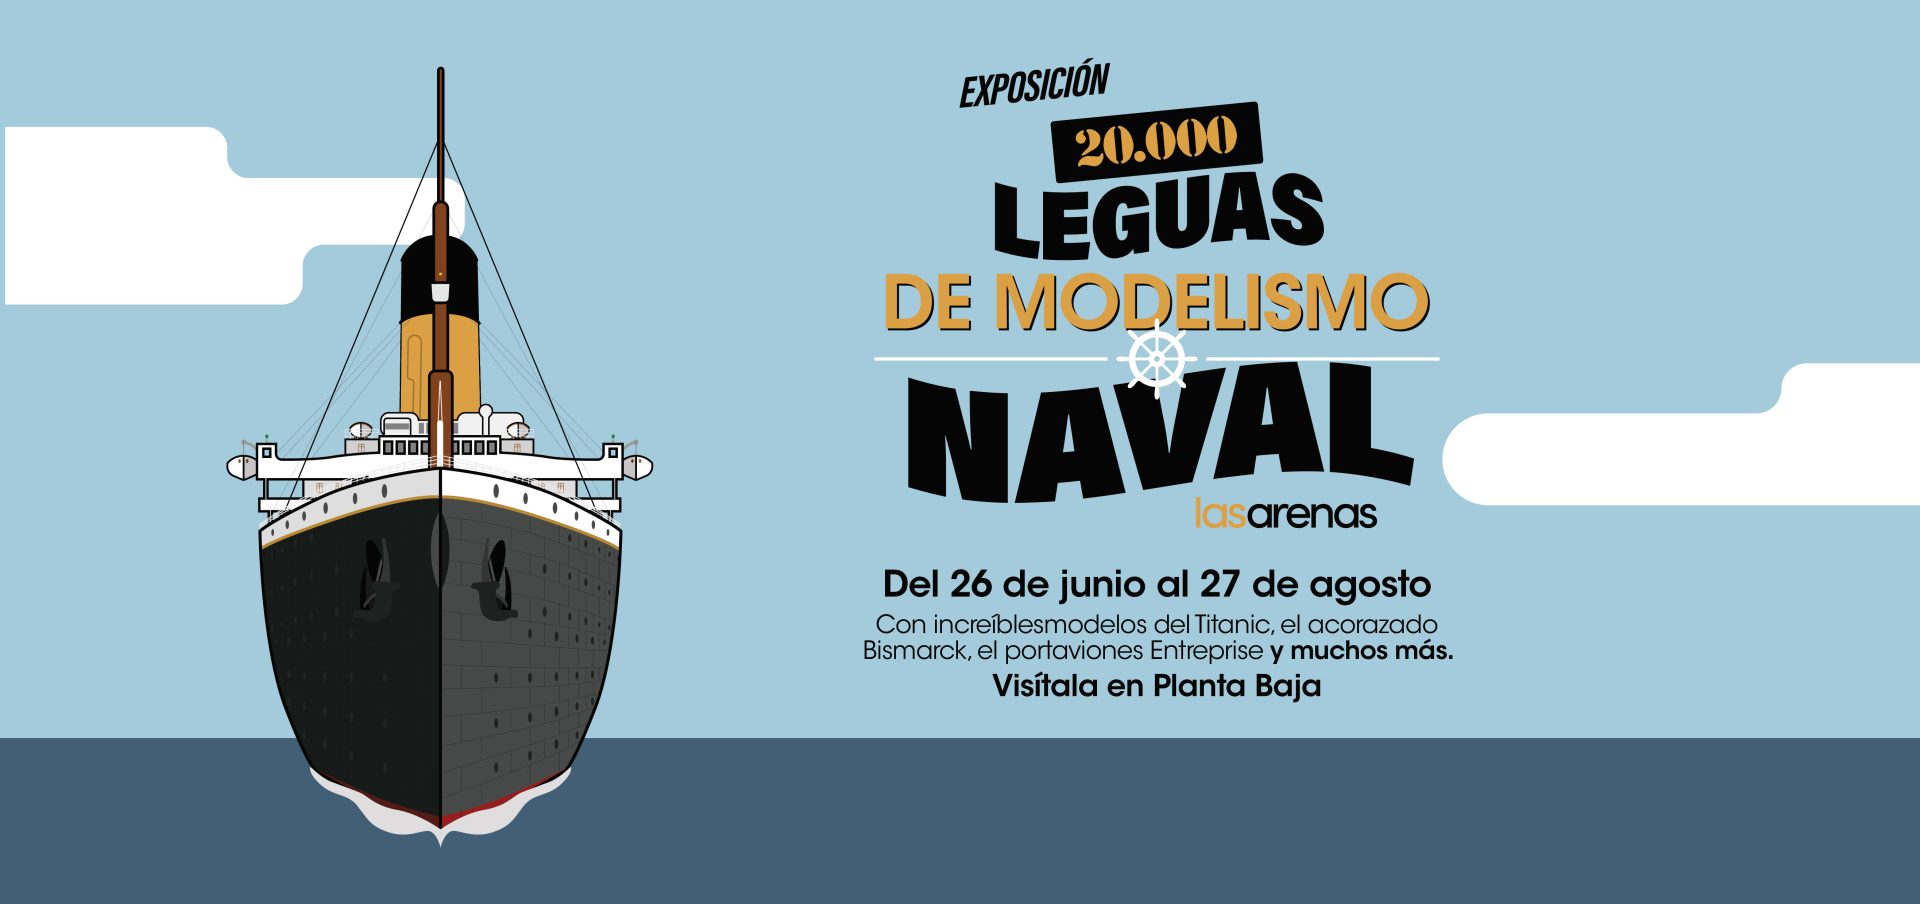 Exposición  20.000 Leguas de Modelismo Naval - Las Arenas - Disfrutarlo es  muy nuestro